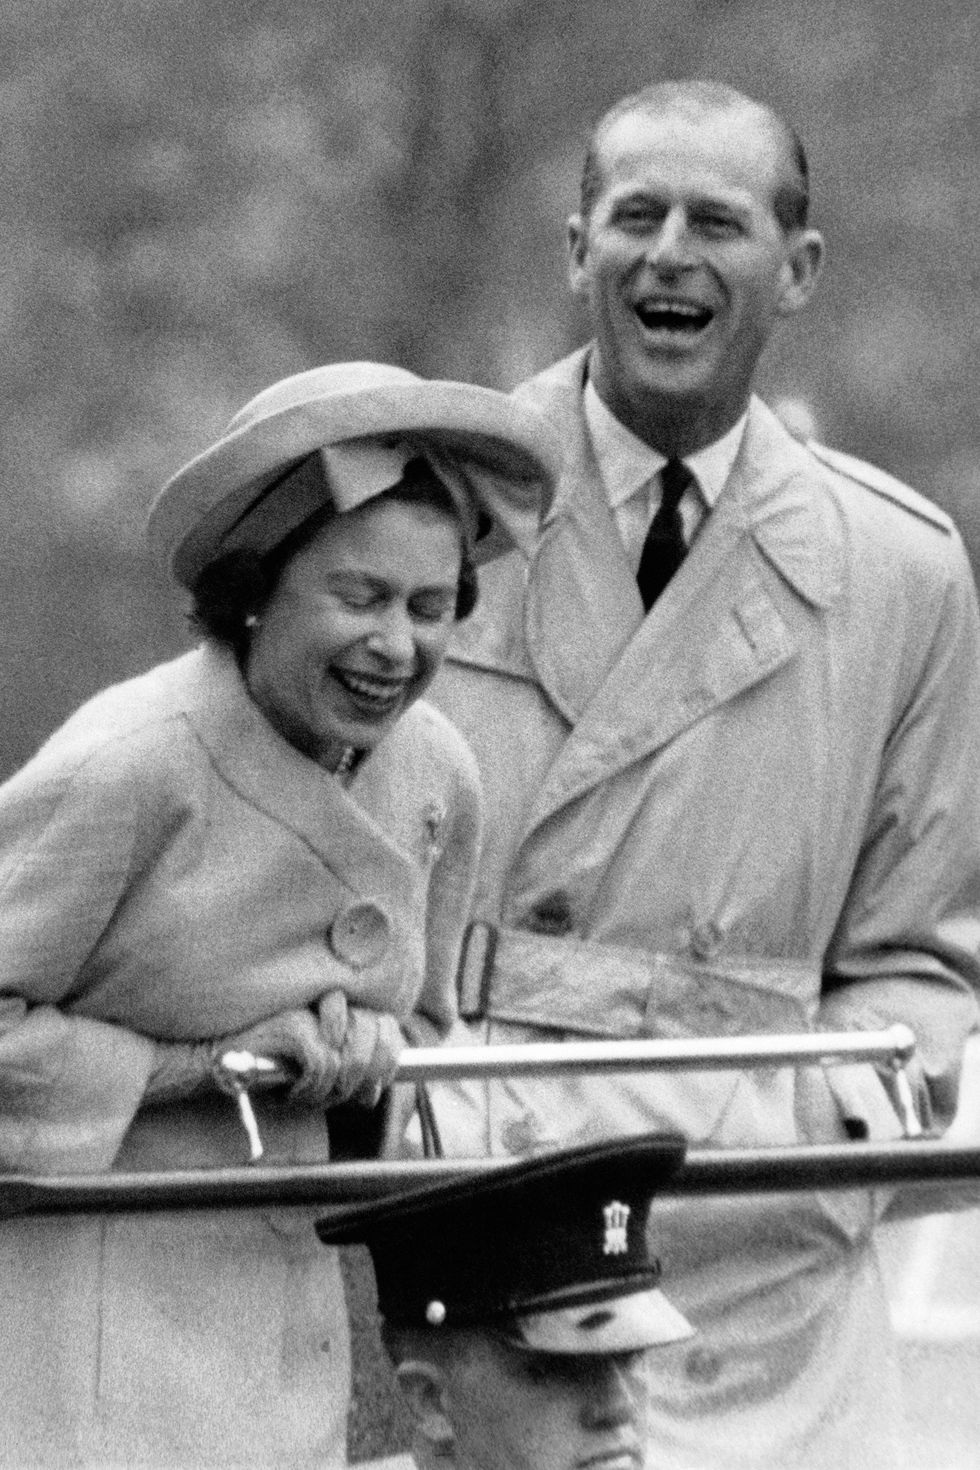 Nữ hoàng Elizabeth II và Hoàng thân Philip: Những khoảnh khắc đẹp nhất - Ảnh 11.